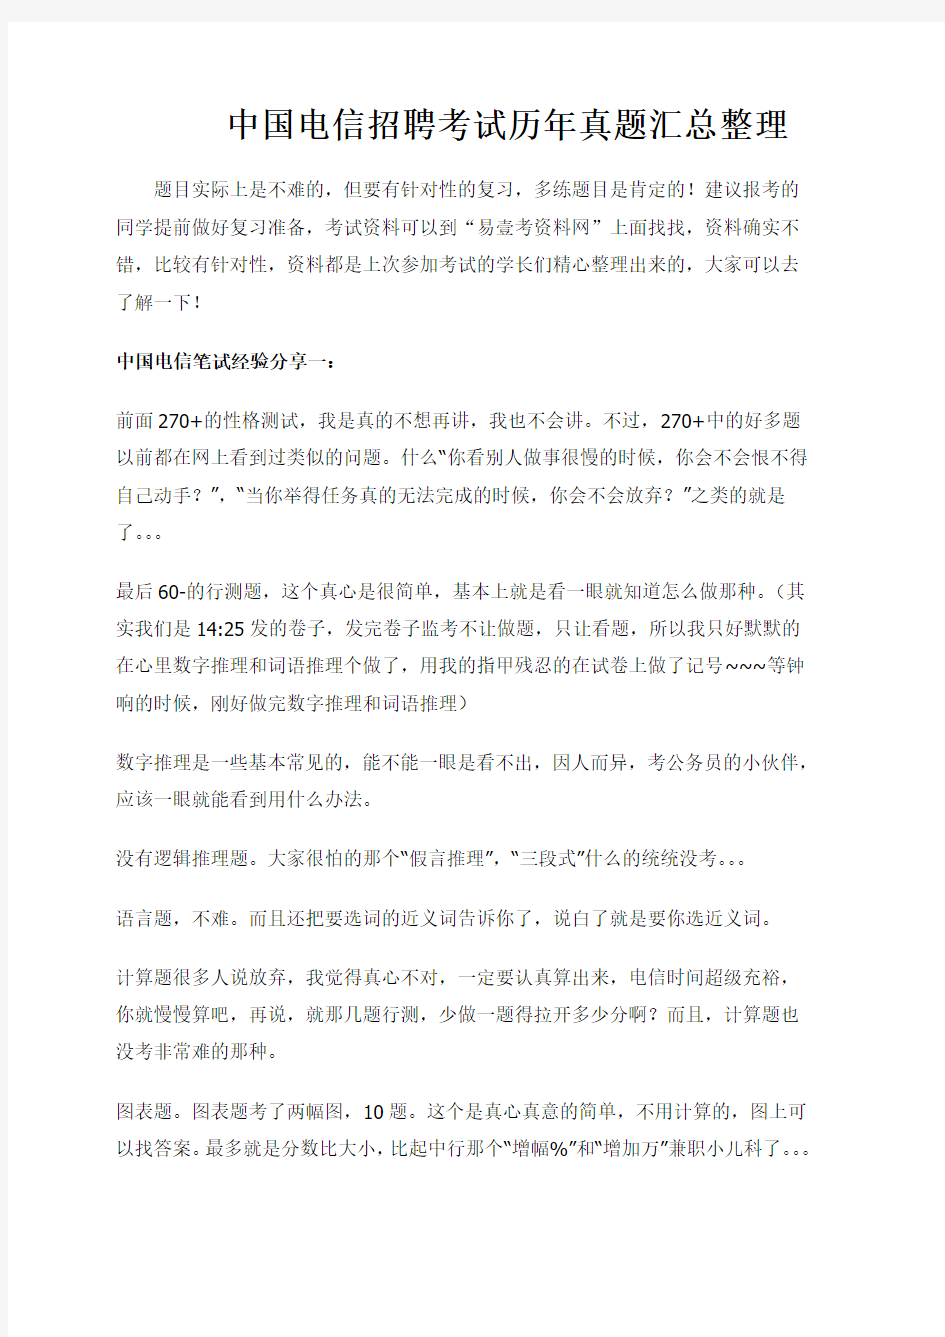 中国电信集团公司招聘考试笔试题真题题库